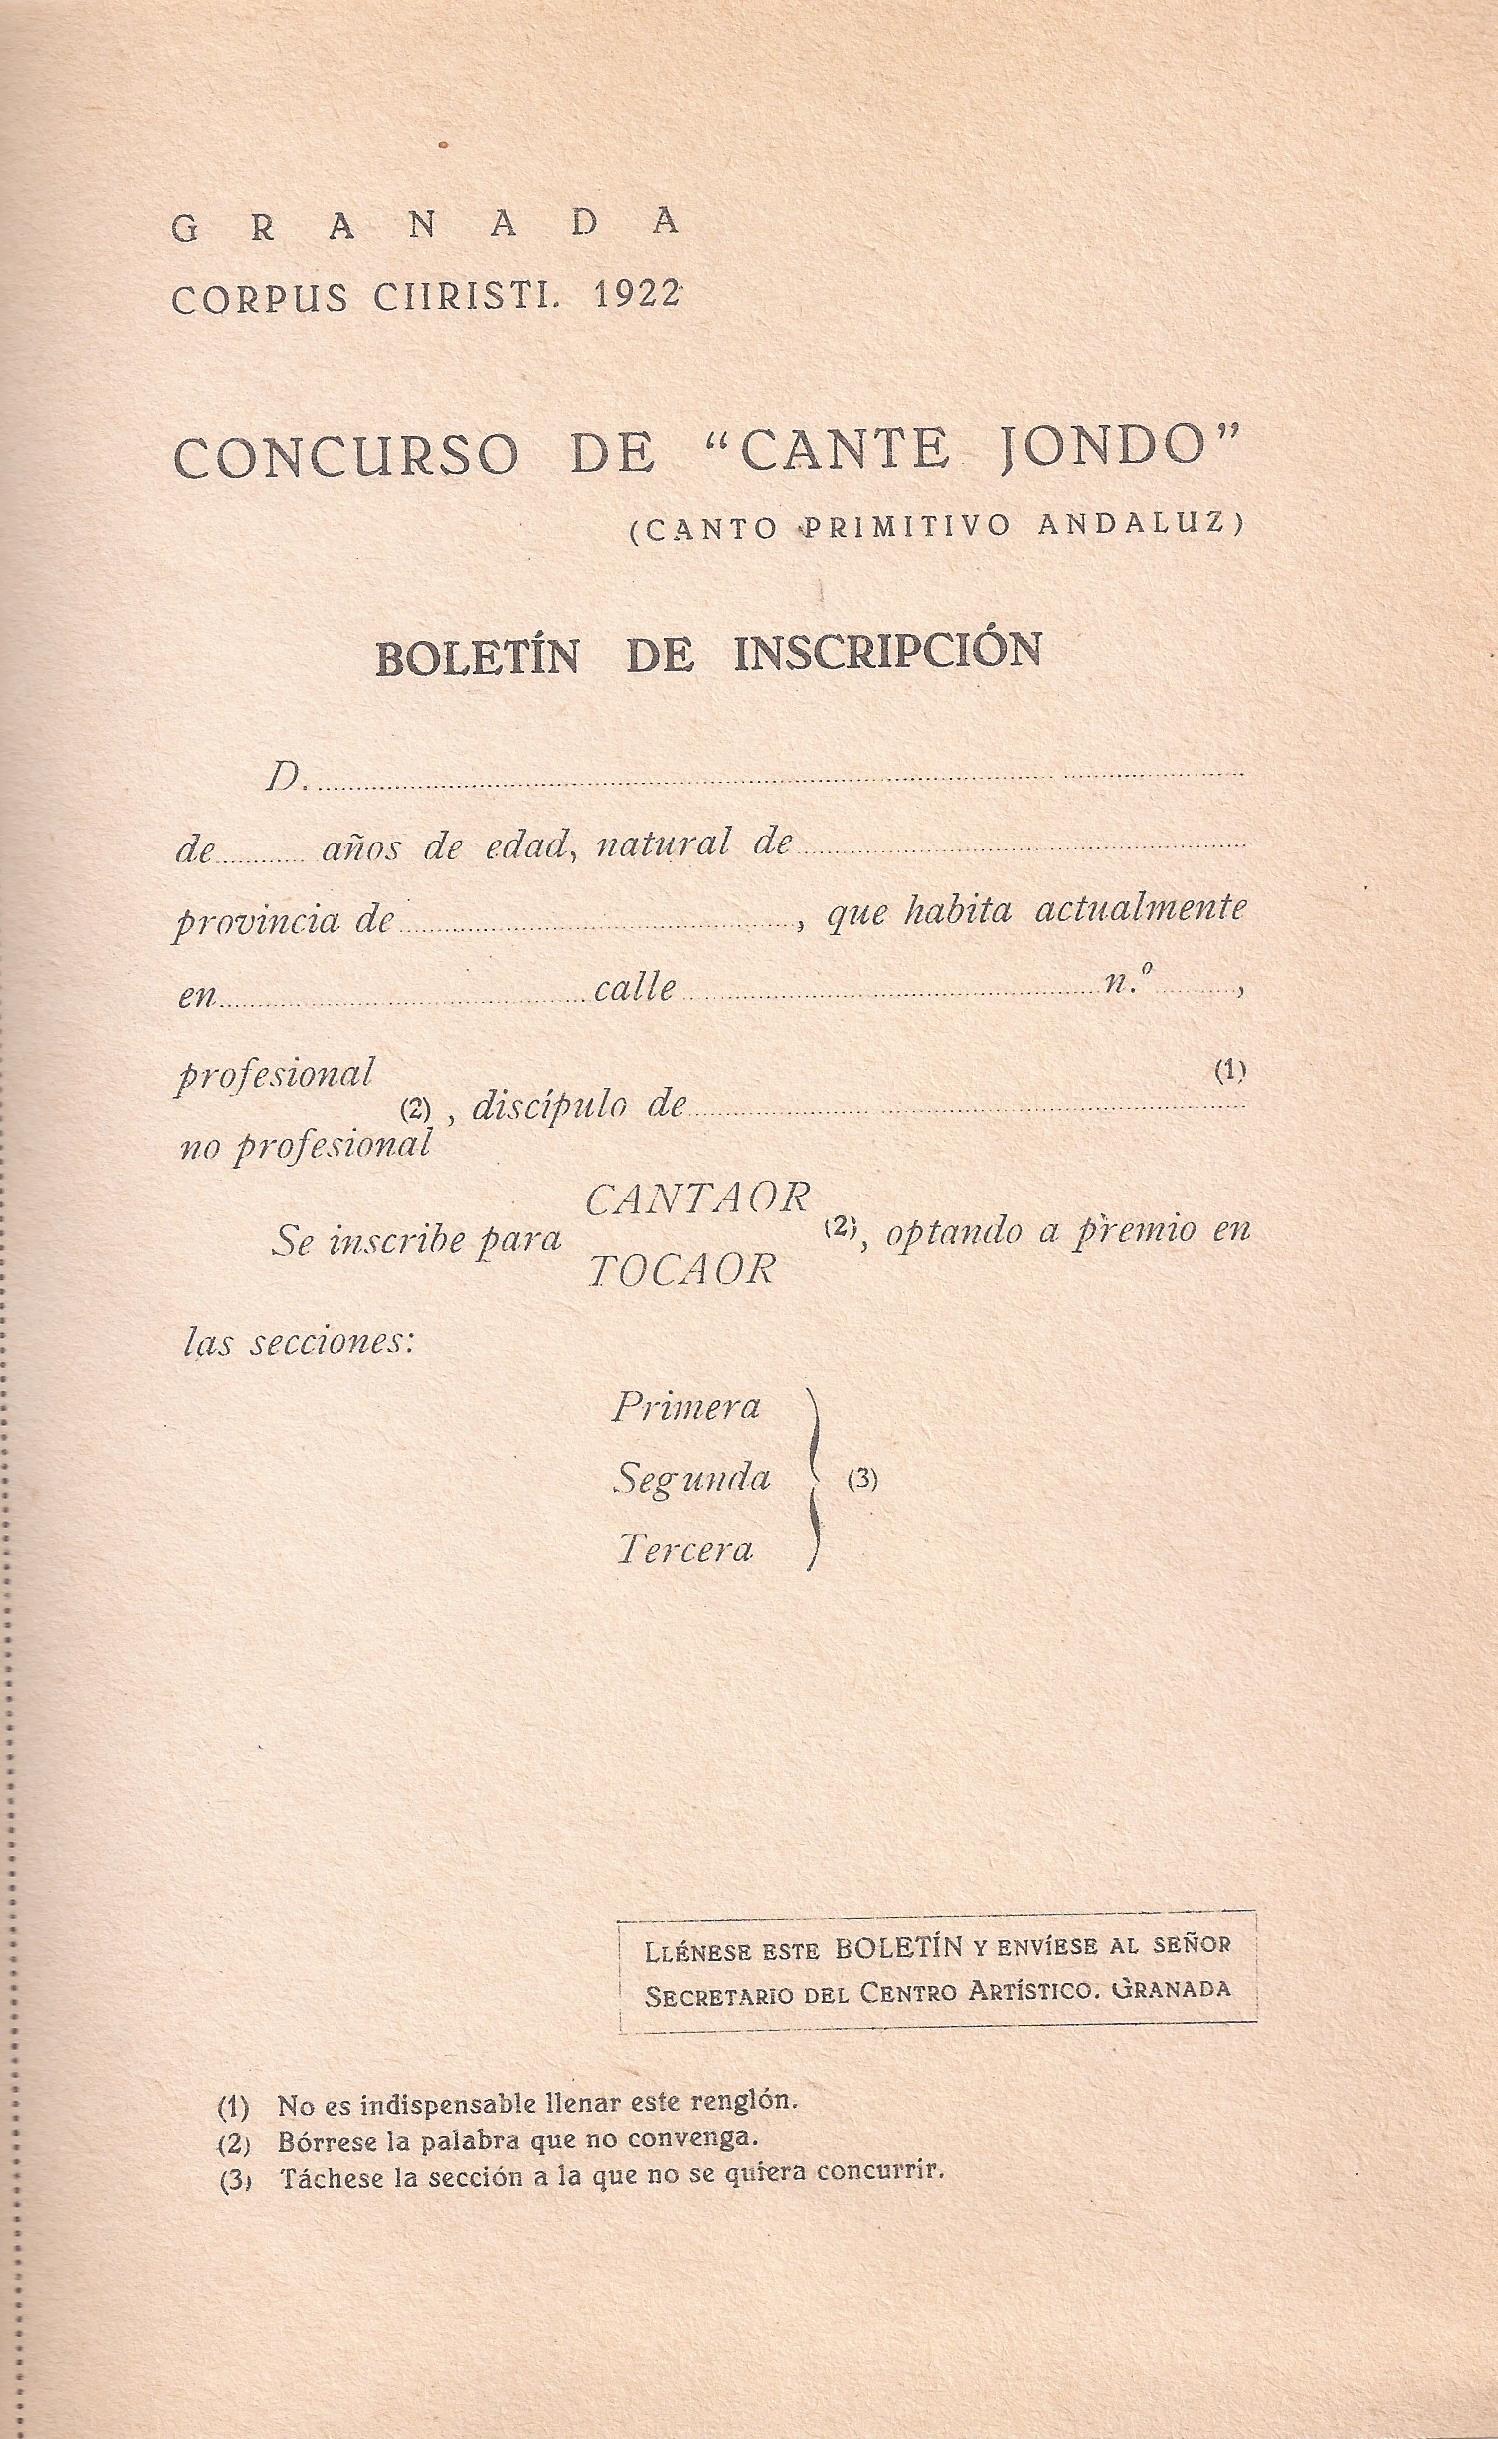 Boletín de inscripción del Concurso de Cante Jondo.